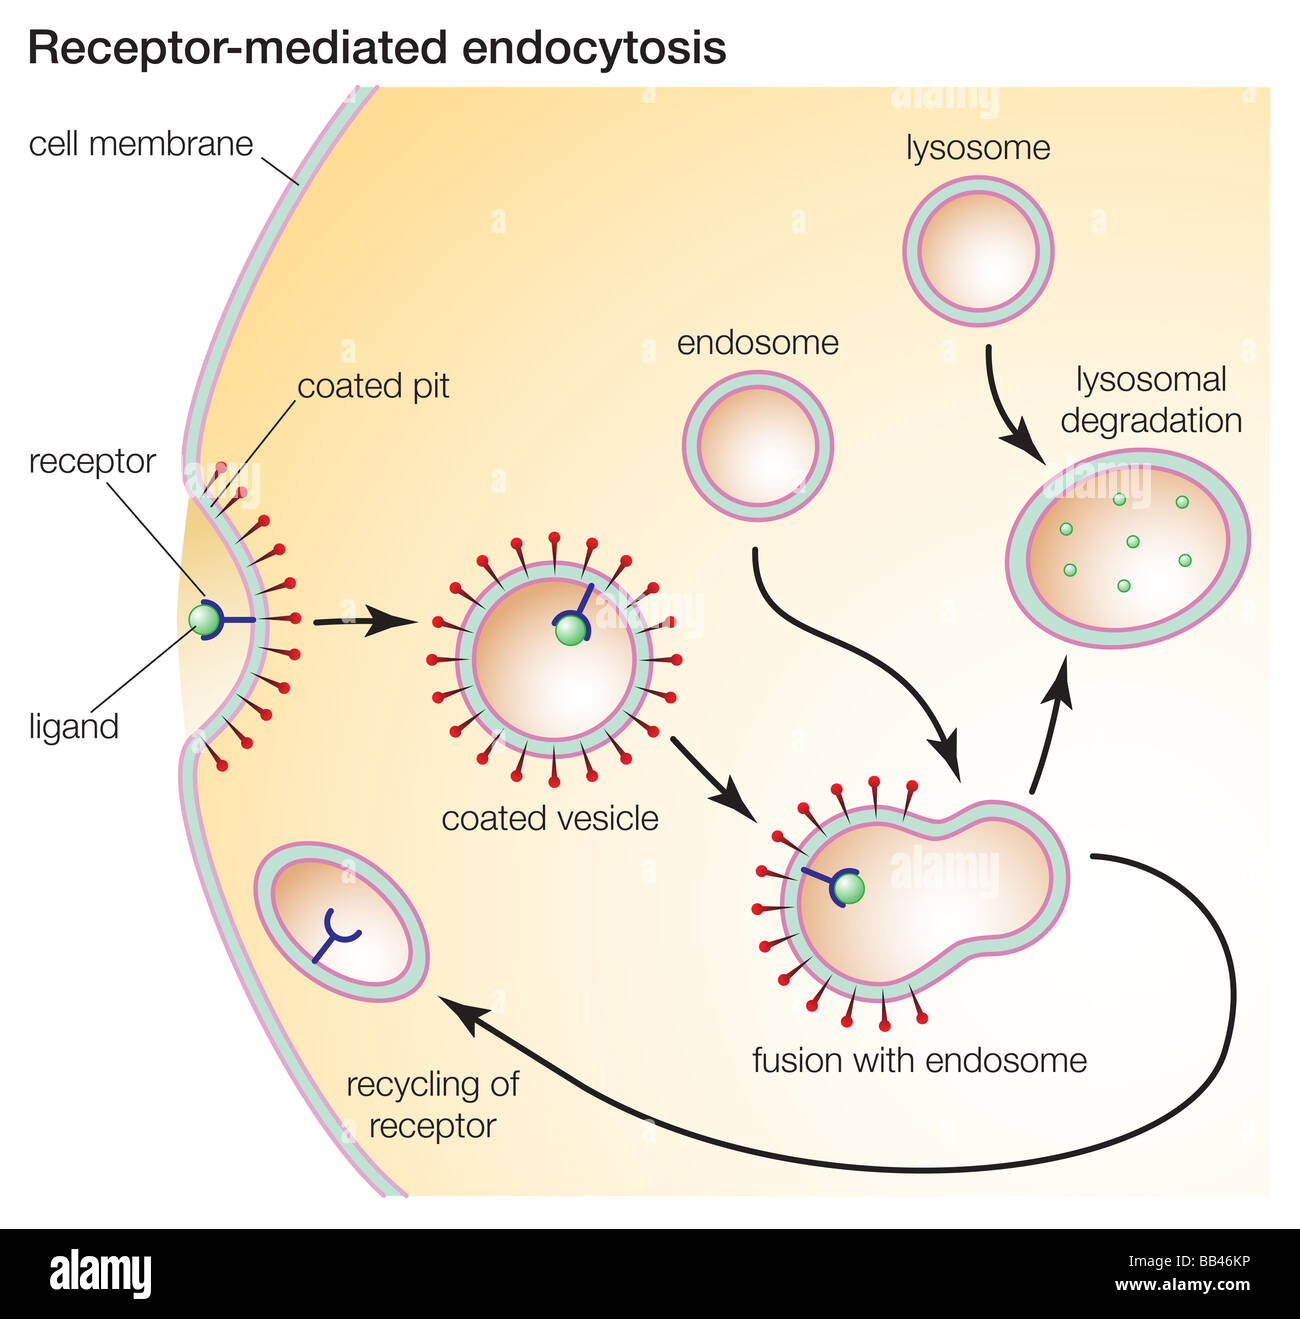 La endocitosis mediada por receptor, permite a estas células ingieren las moléculas como las proteínas que son necesarias para el funcionamiento normal de la célula. Foto de stock